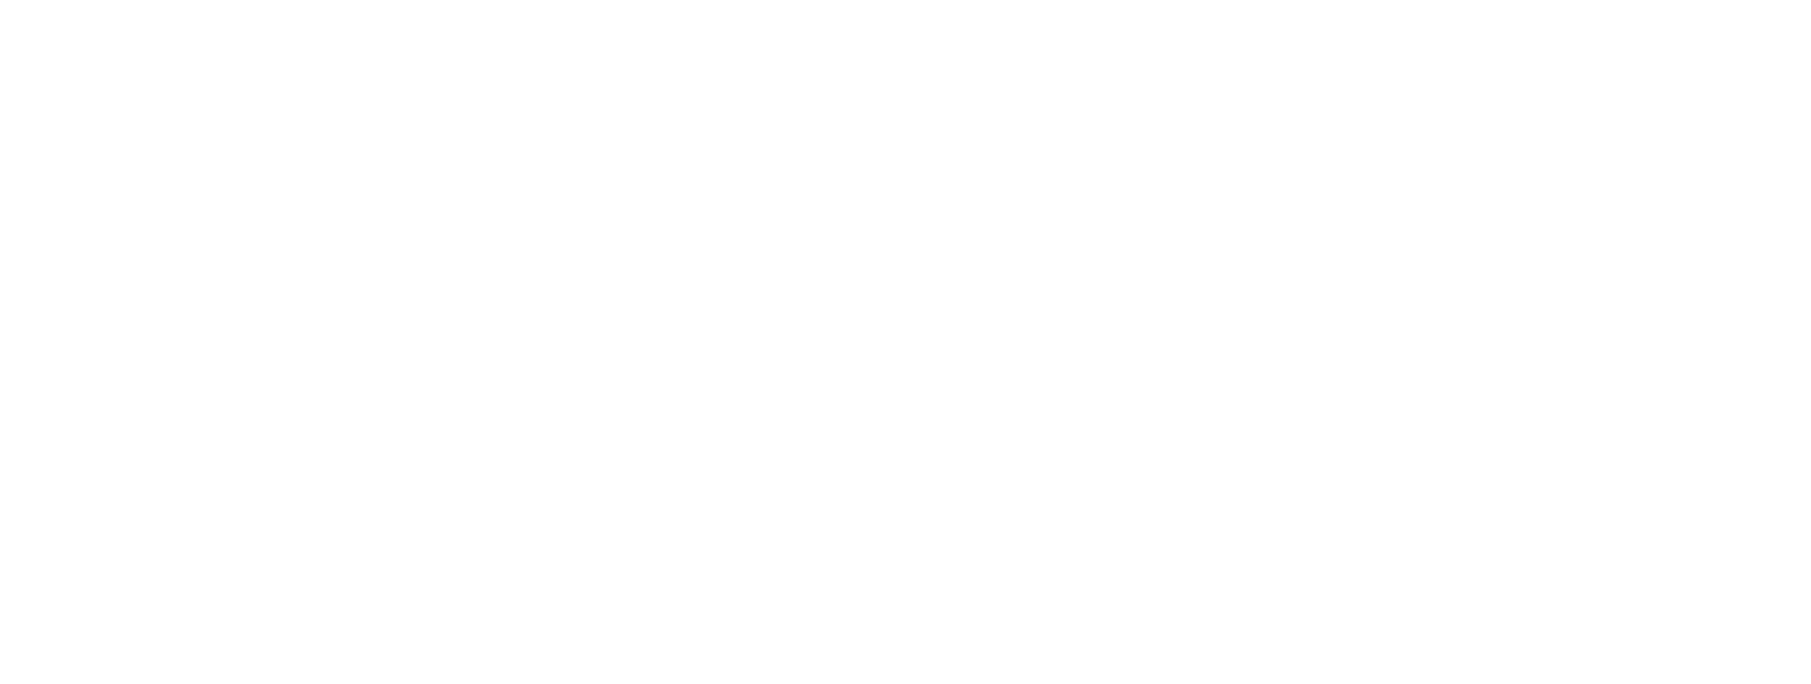 Empire Bay Public School 